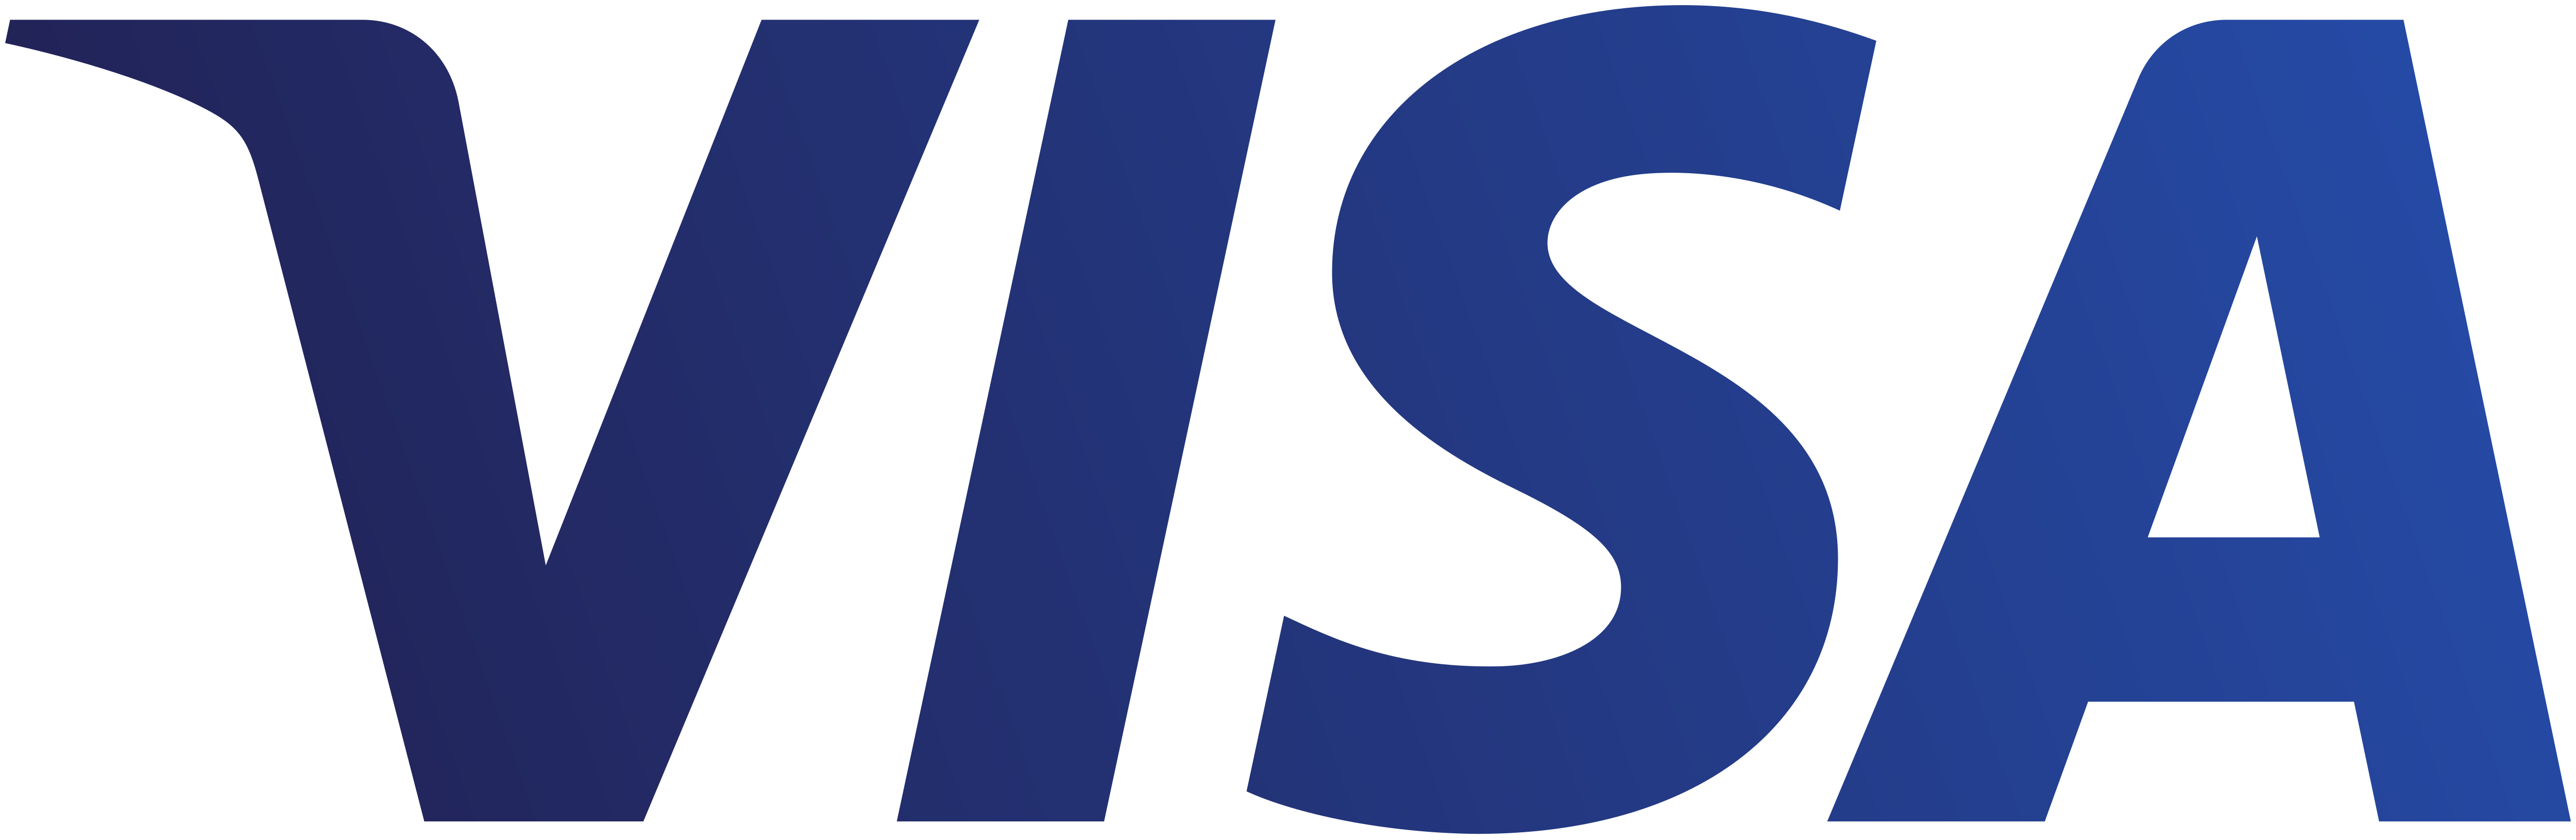 visa logo - Visa Logo